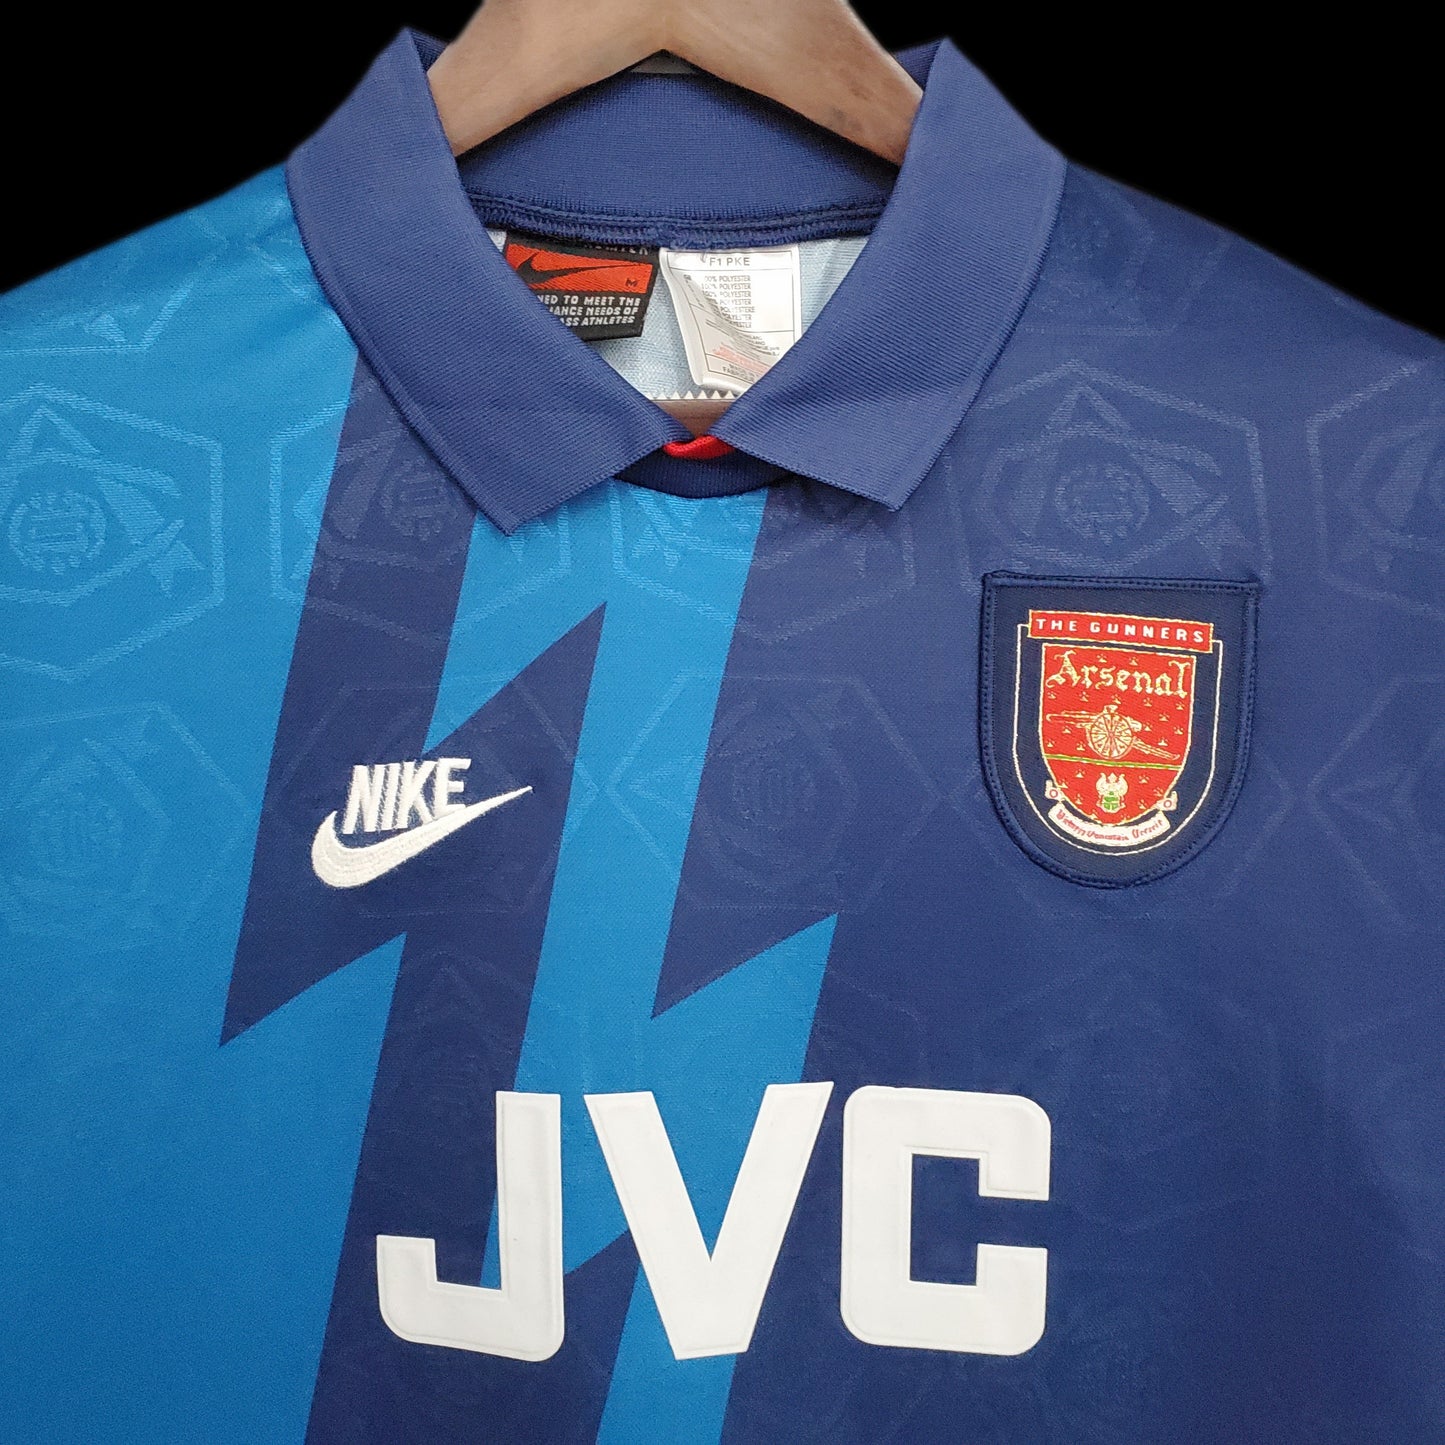 Retro Arsenal Home Kit 1995/96